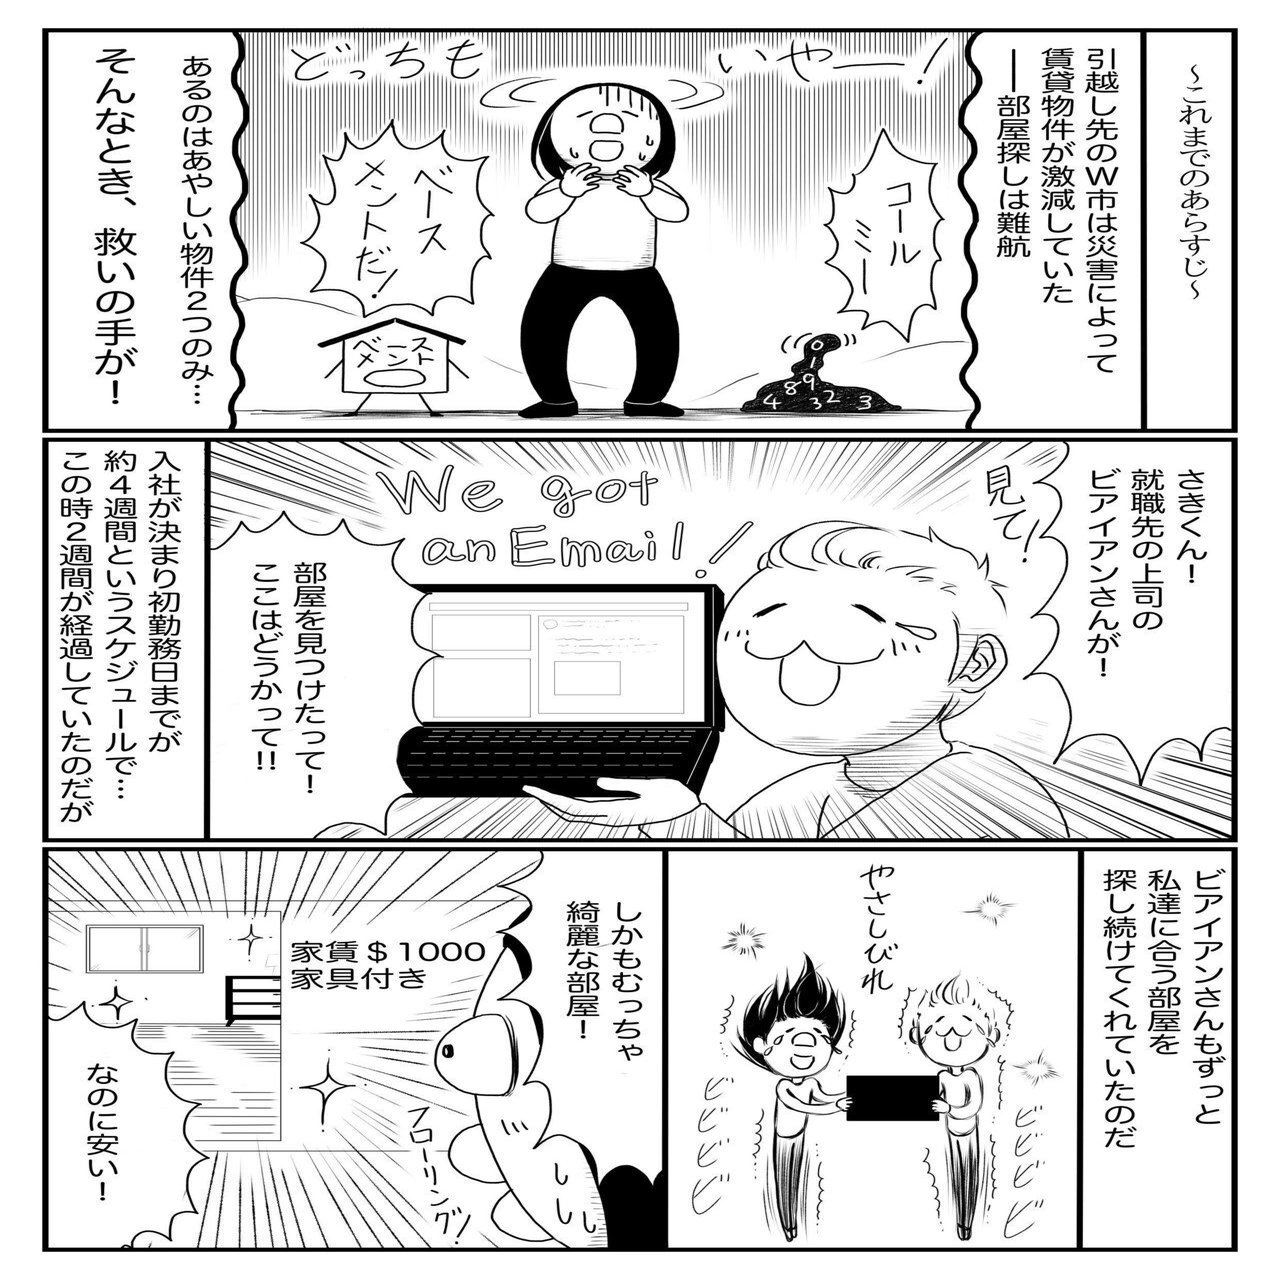 物件情報は 思いもよらぬところに集まっていた 家探し編 武村沙紀 漫画家 作家 Note